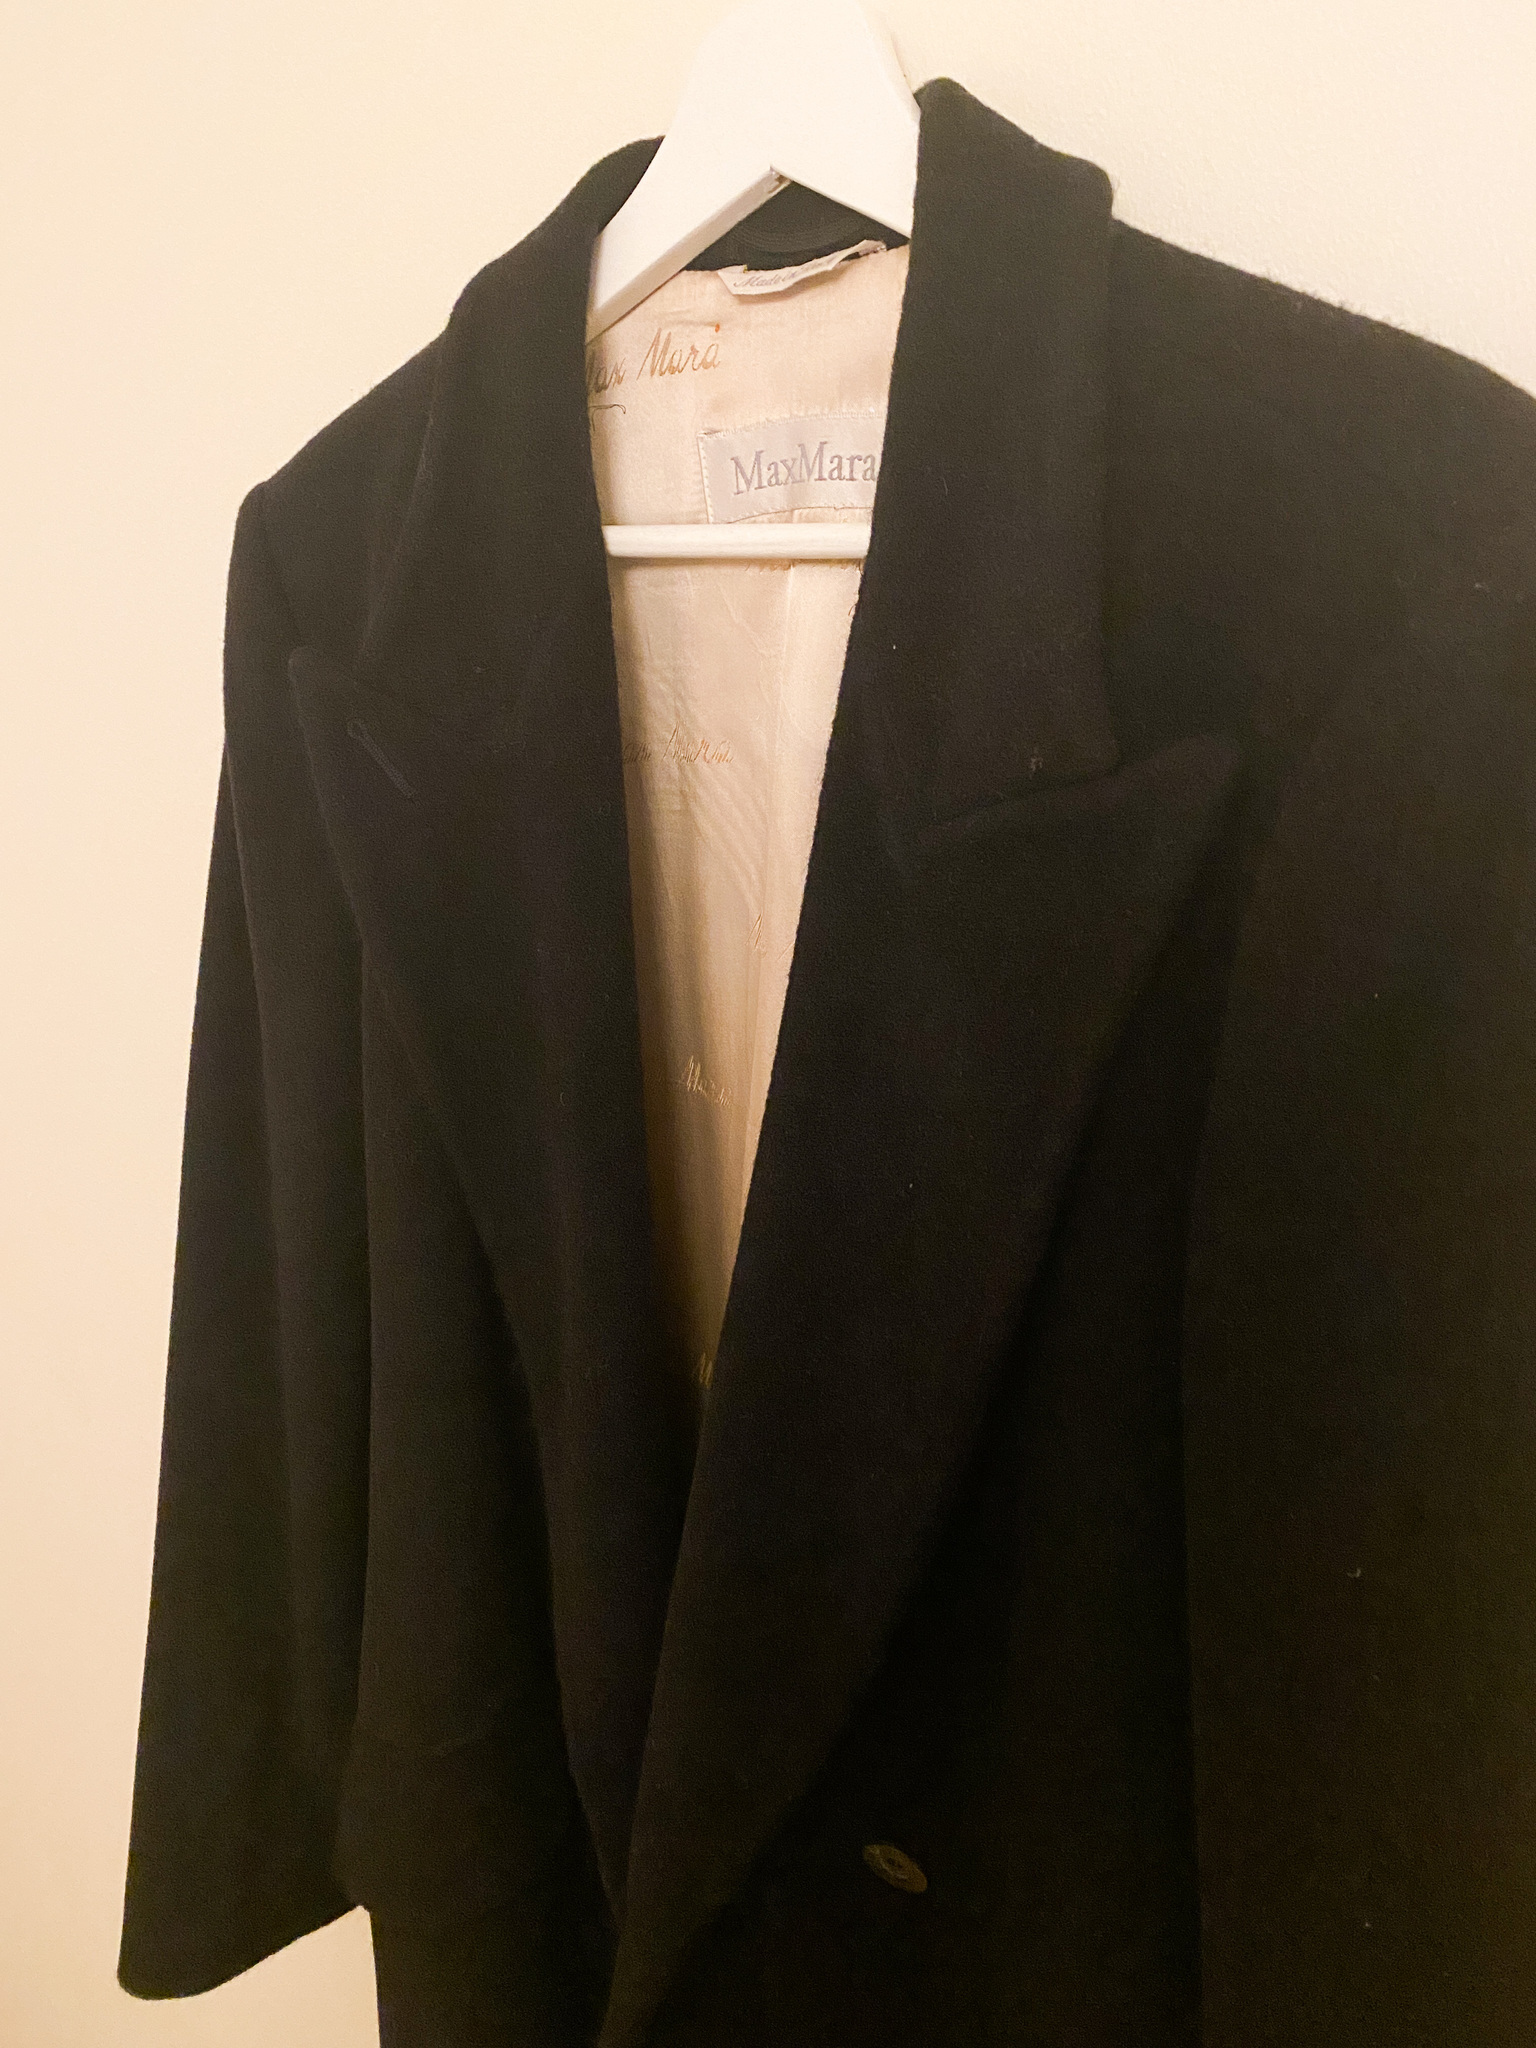 MAXMARA Wool Coat (FR42)